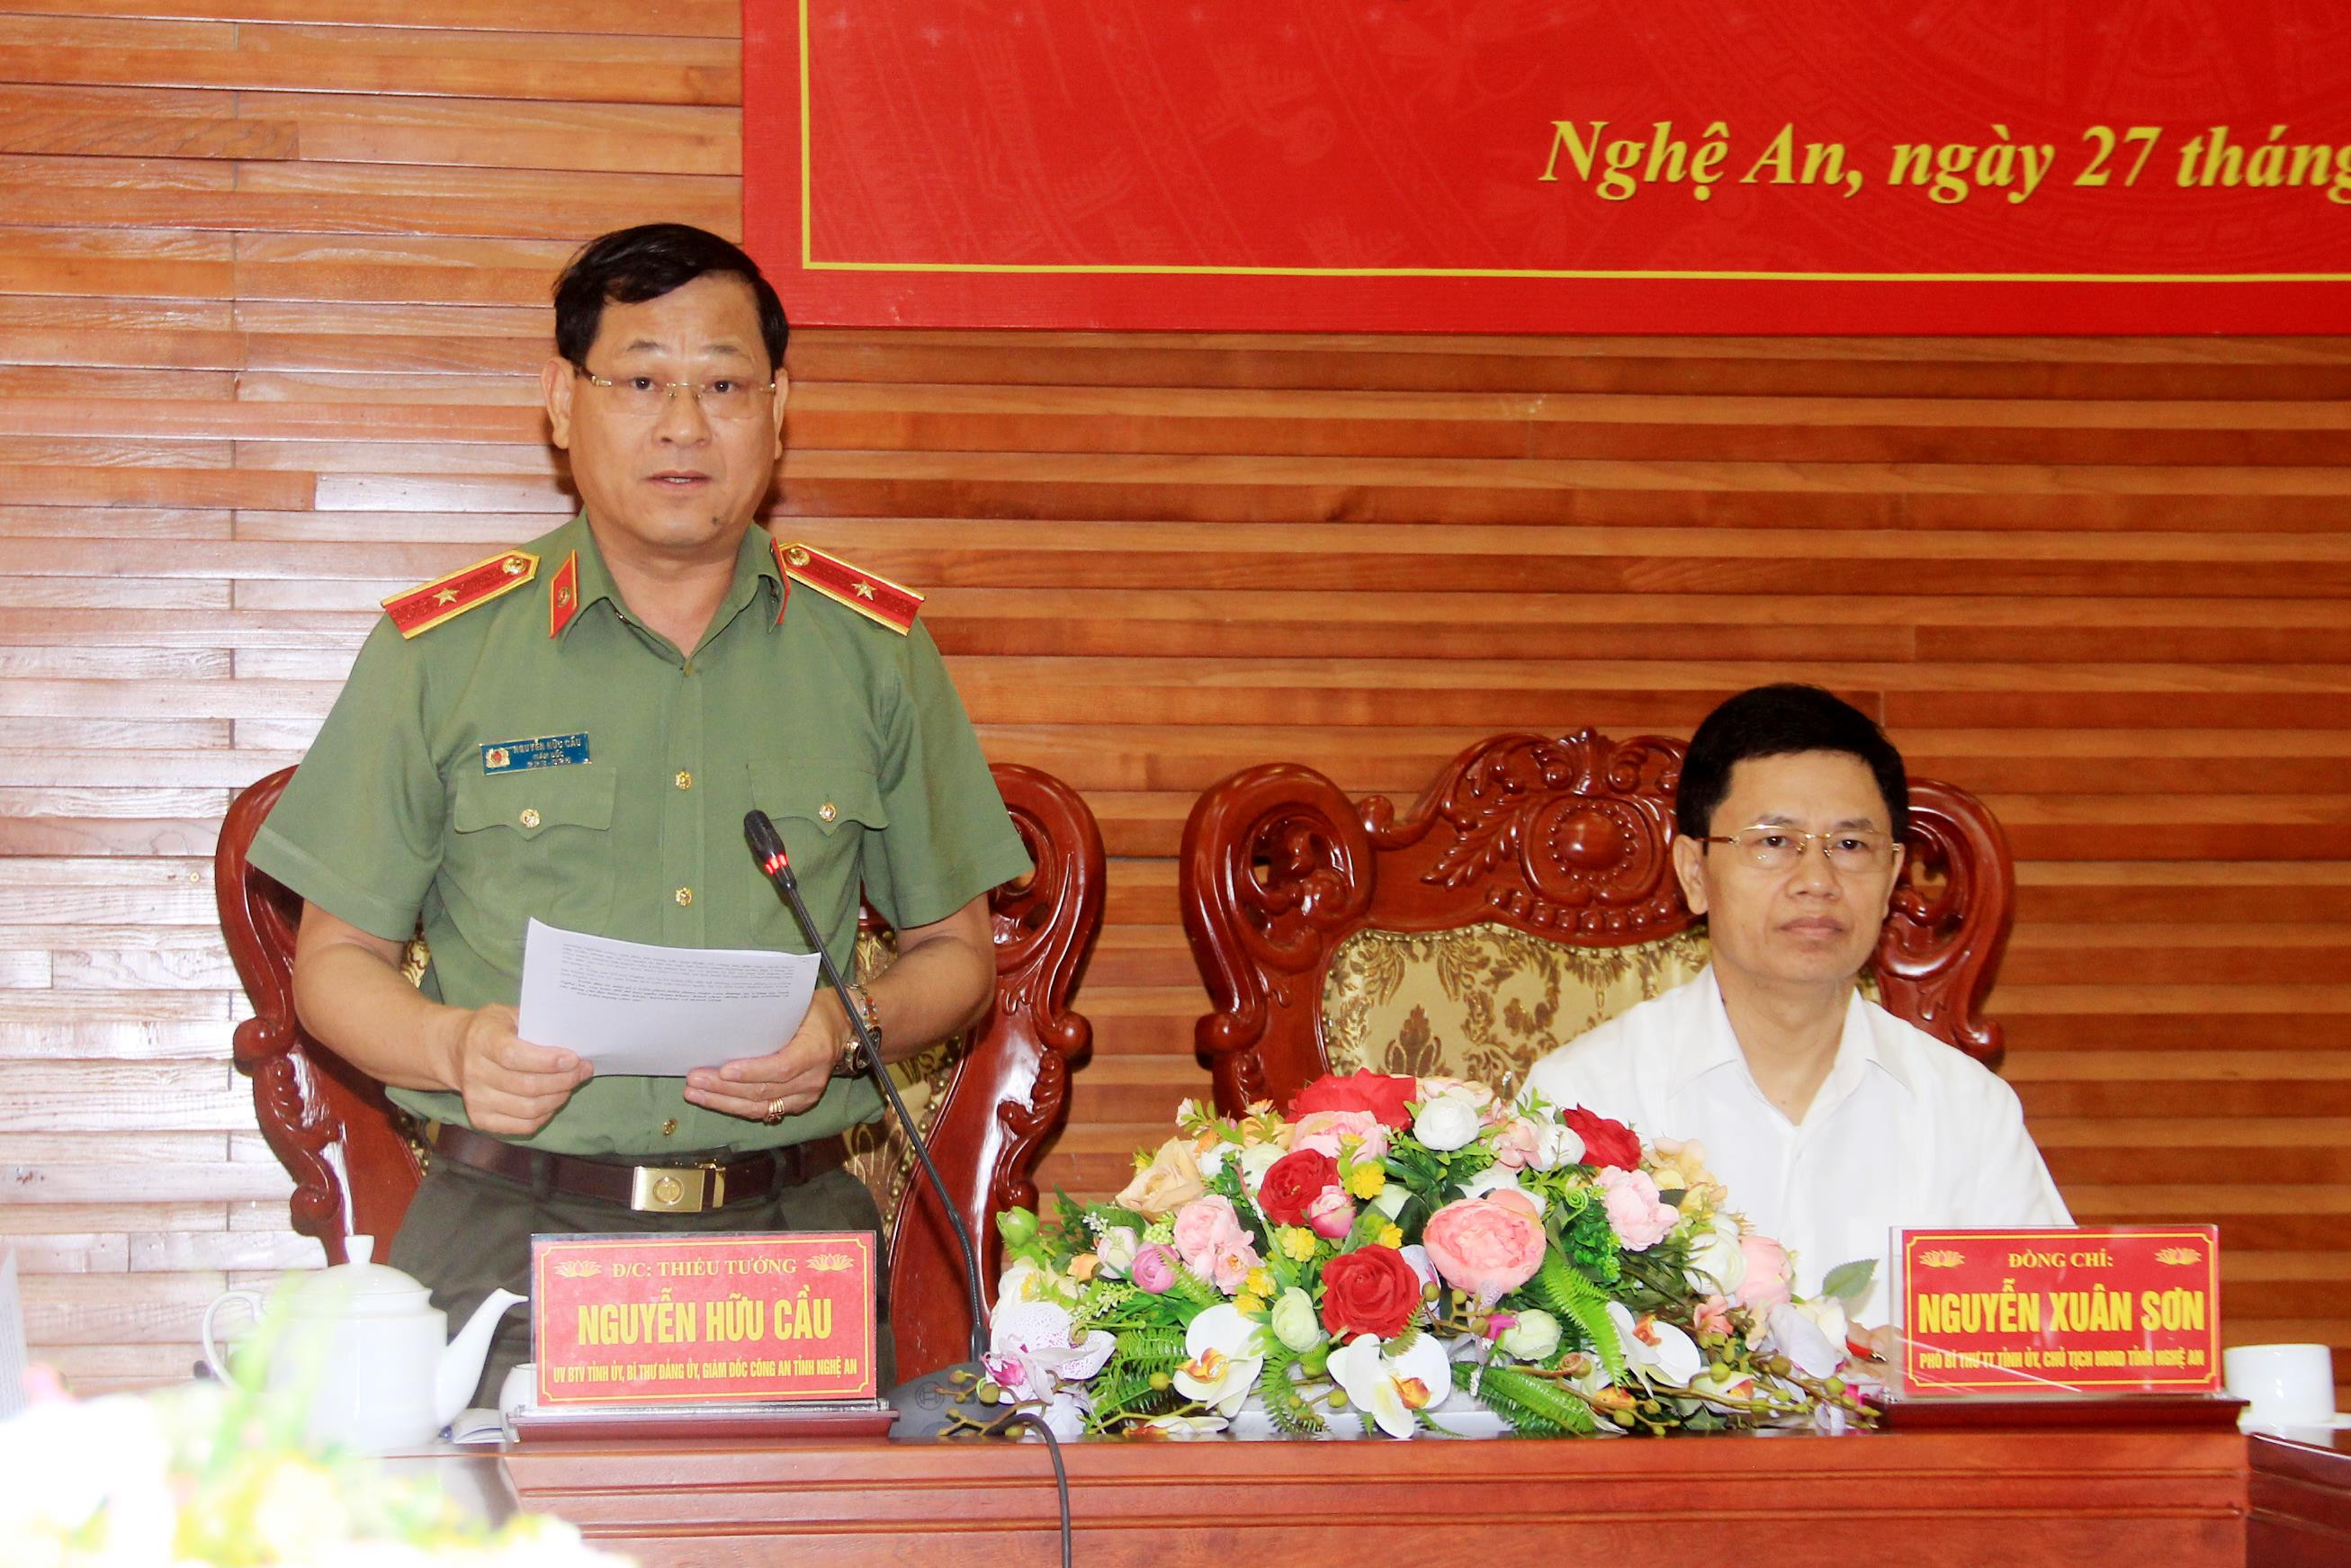 Thiếu tướng Nguyễn Hữu Cầu đề nghị cần nâng cao hiệu quả công tác đào tạo, sát hạch lái xe nhằm kìm hãm tai nạn và ùn tắc giao thông. Ảnh: Phạm Bằng